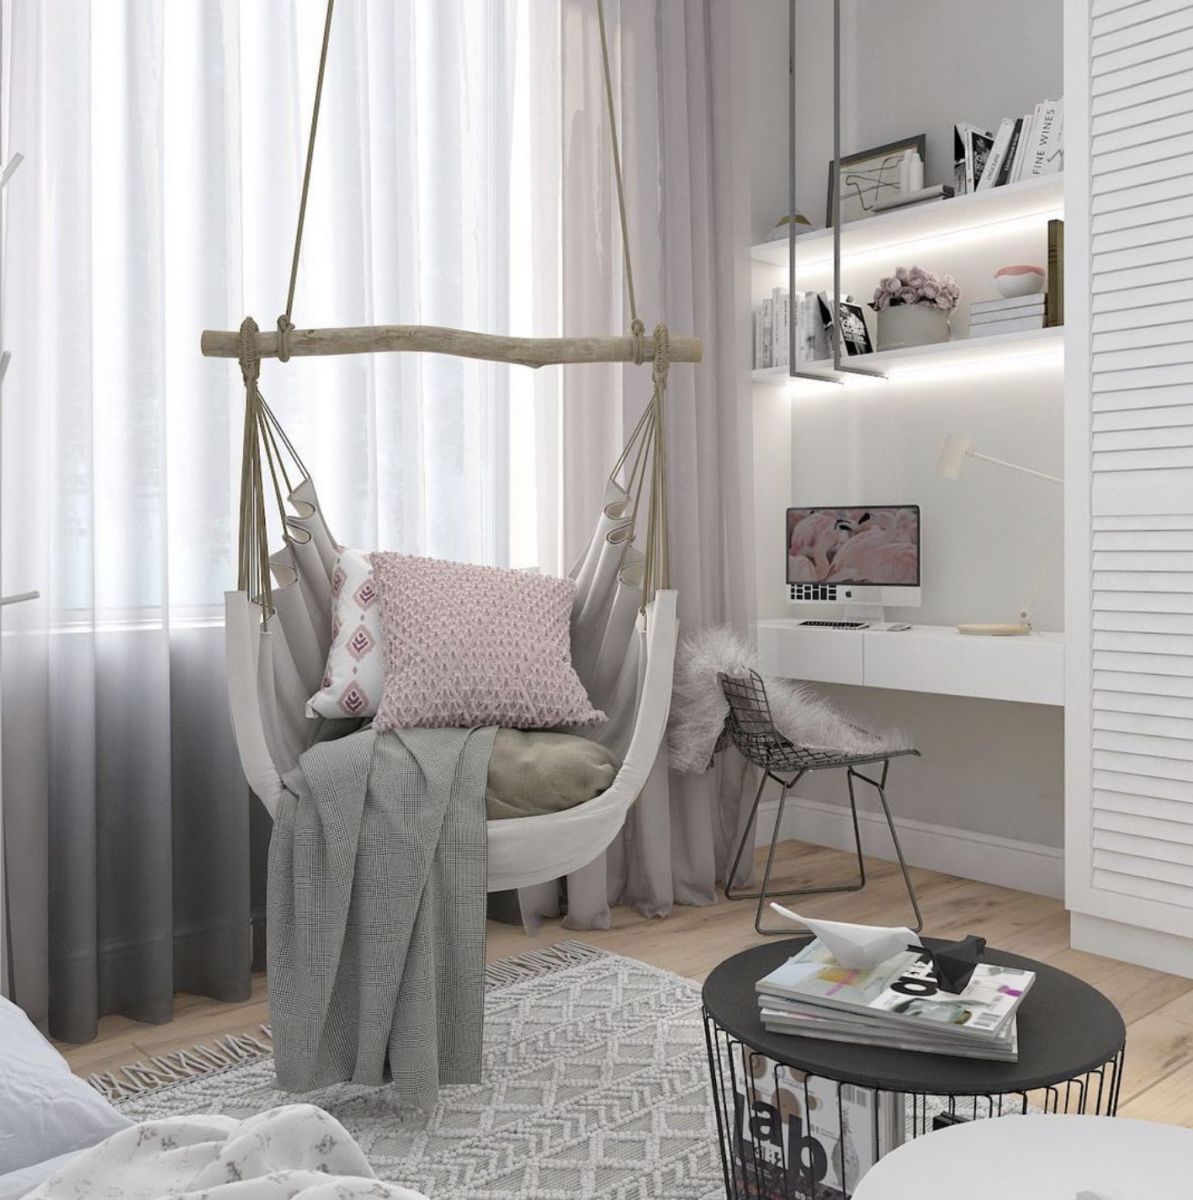 В’язані пледи, подушки, килими роблять простір затишним Фото: Instagram Каліни Алпатової